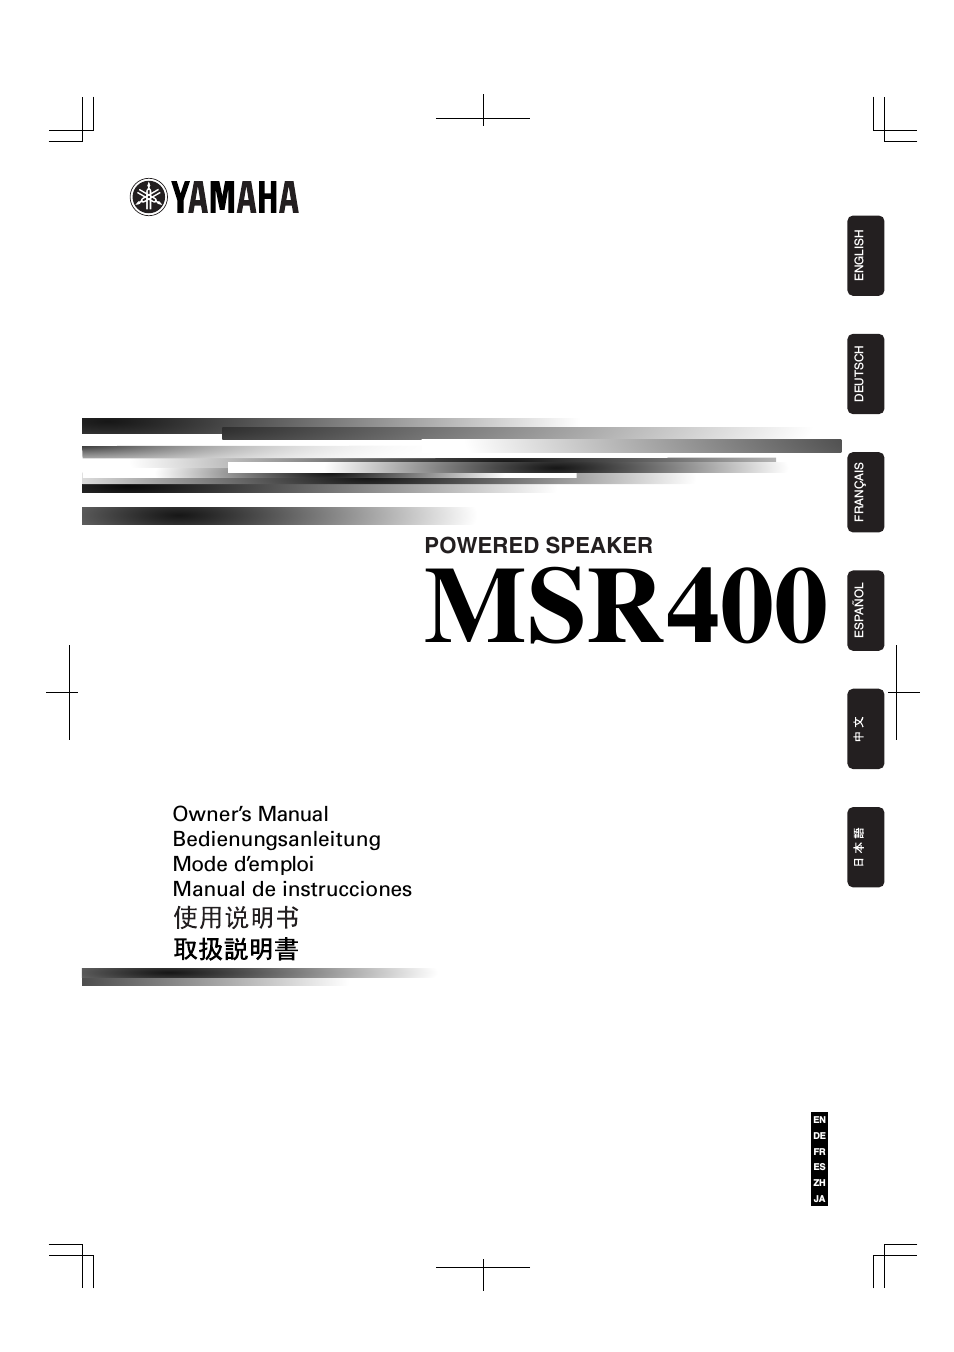 MSR400